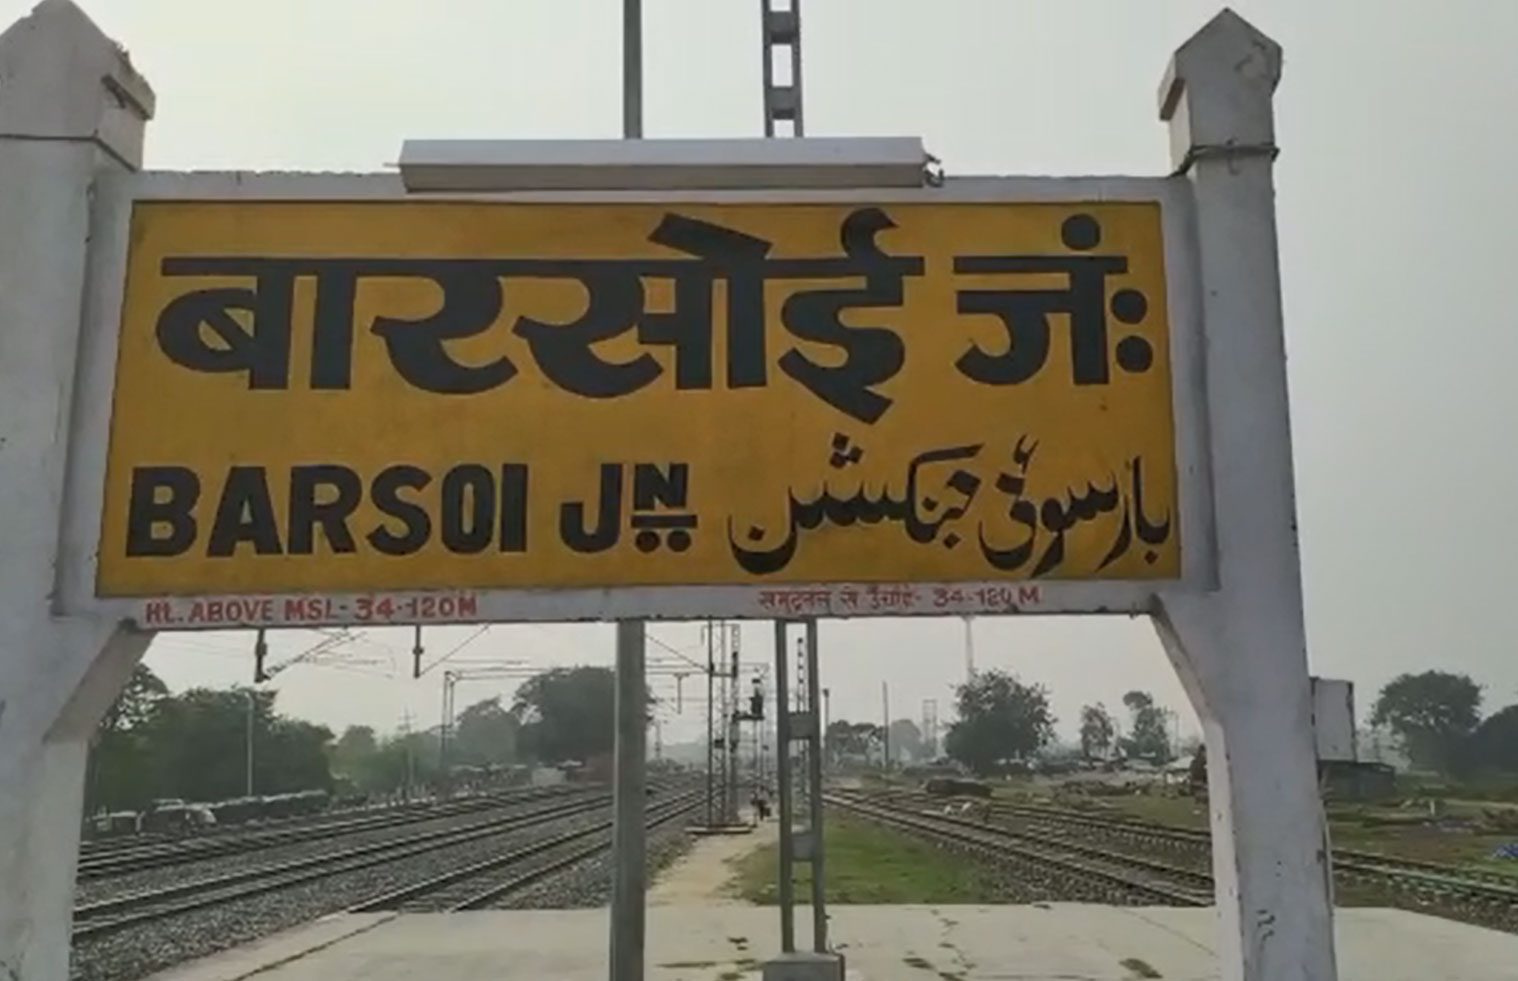 Barsoi Junction